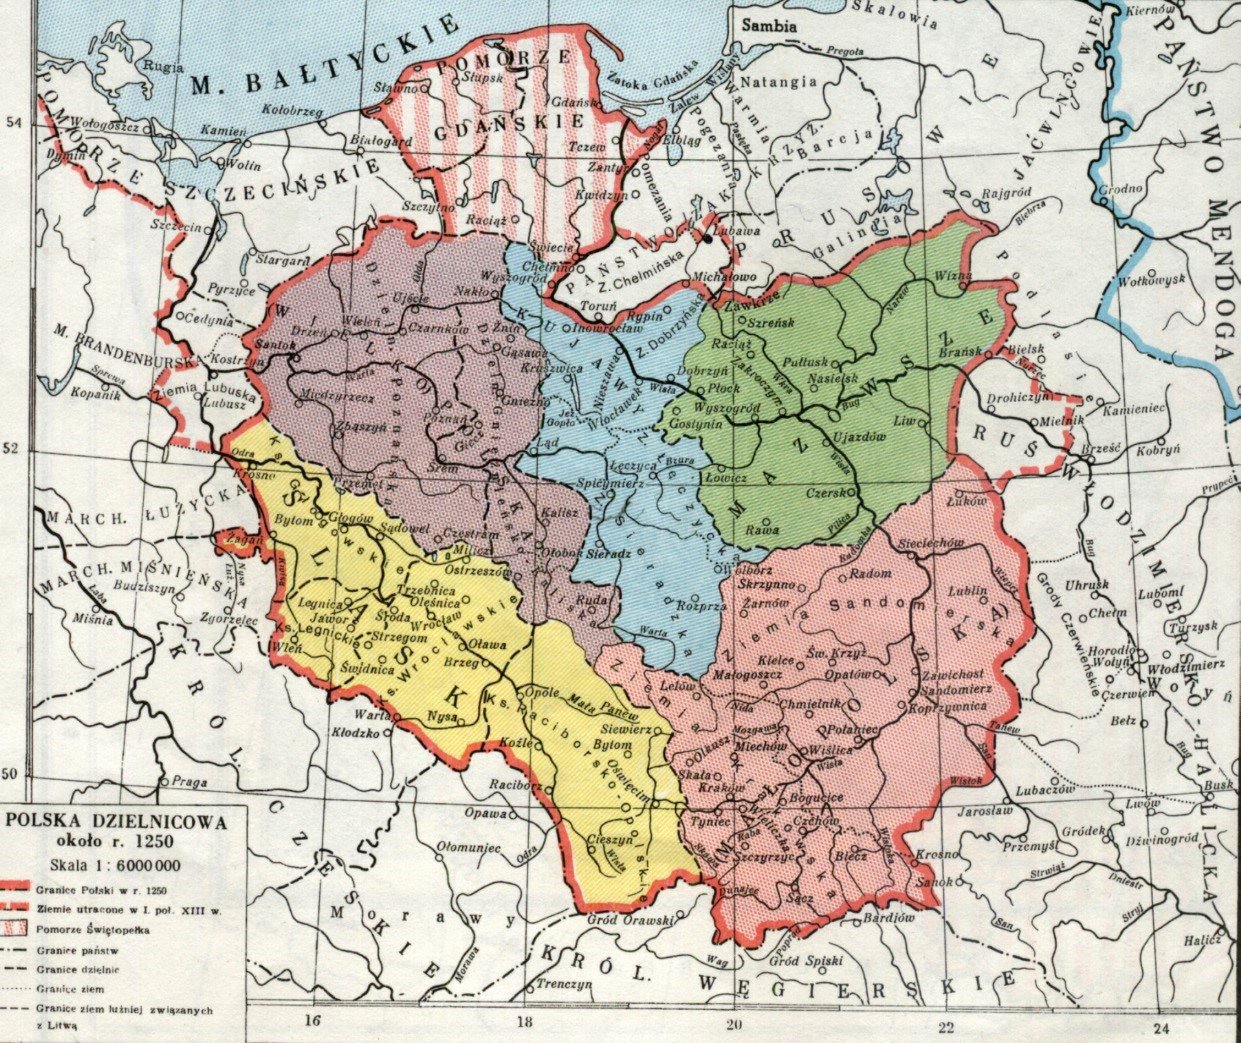 Polska dzielnicowa około 1250 r.